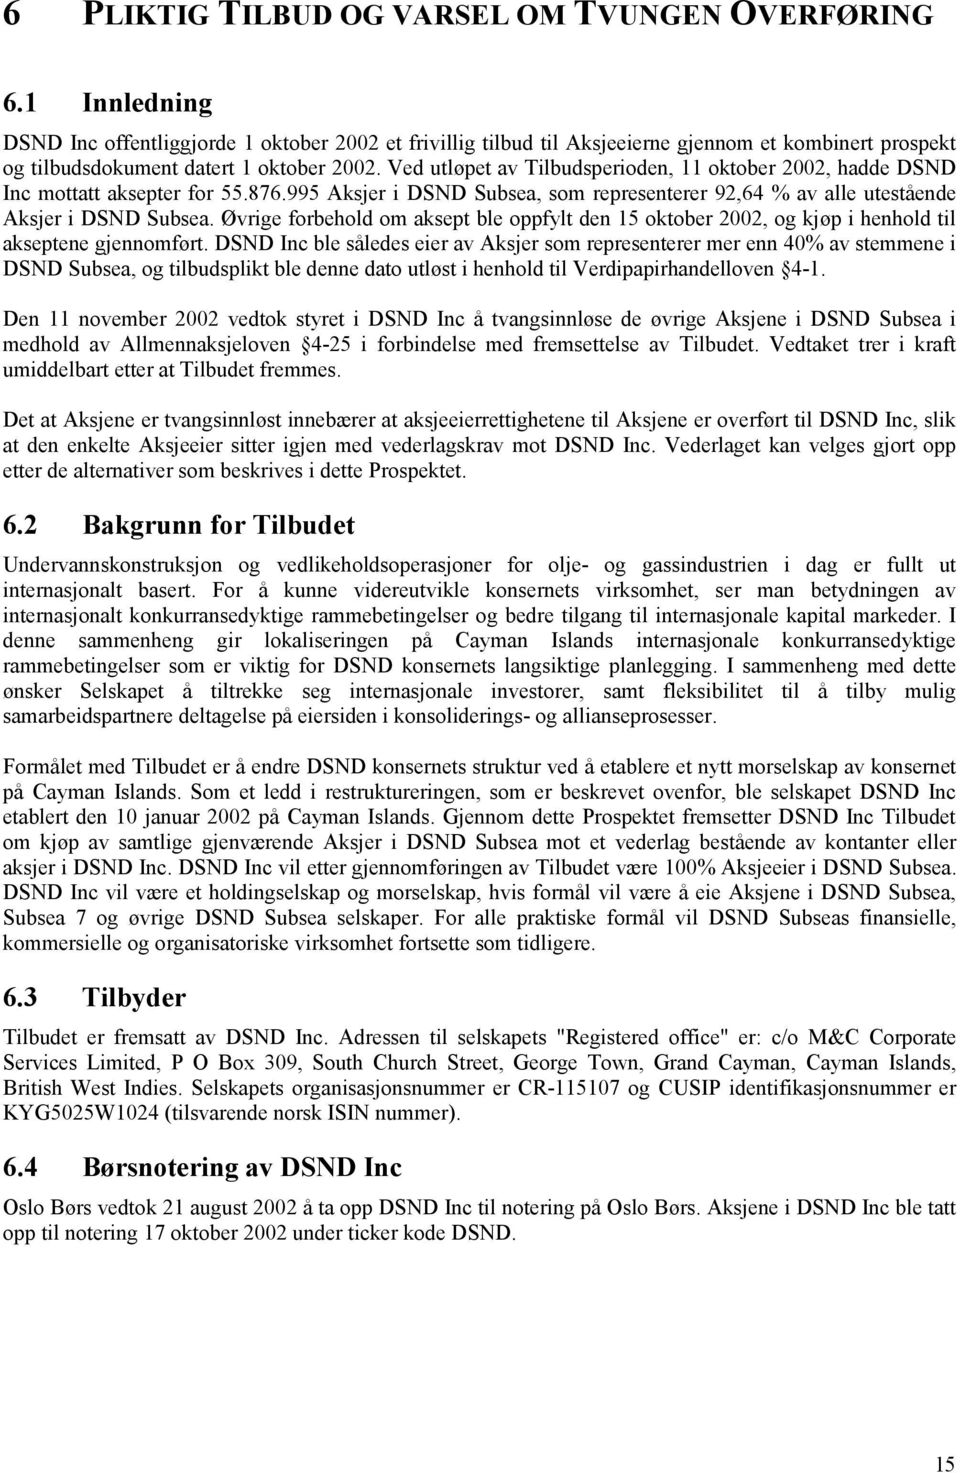 Ved utløpet av Tilbudsperioden, 11 oktober 2002, hadde DSND Inc mottatt aksepter for 55.876.995 Aksjer i DSND Subsea, som representerer 92,64 % av alle utestående Aksjer i DSND Subsea.